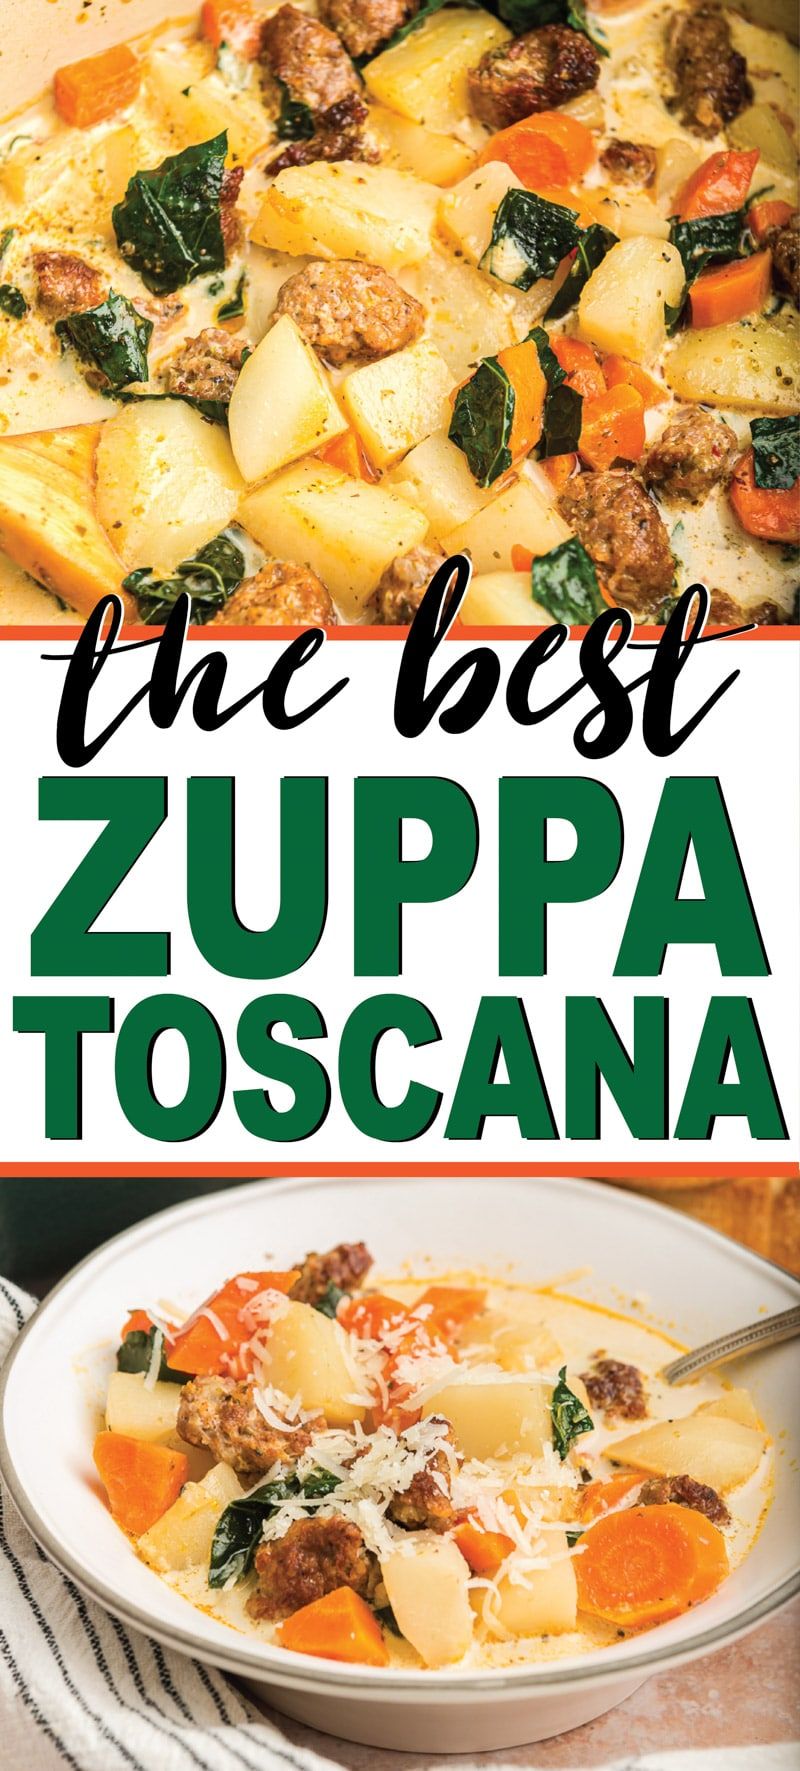 Η καλύτερη συνταγή copycat Olive Garden zuppa toscana! Εύκολο να φτιαχτεί και τόσο καλό που ποτέ δεν θα ξέρετε ότι είναι πραγματικά αρκετά υγιές για να φάτε σε ολόκληρο το 30!